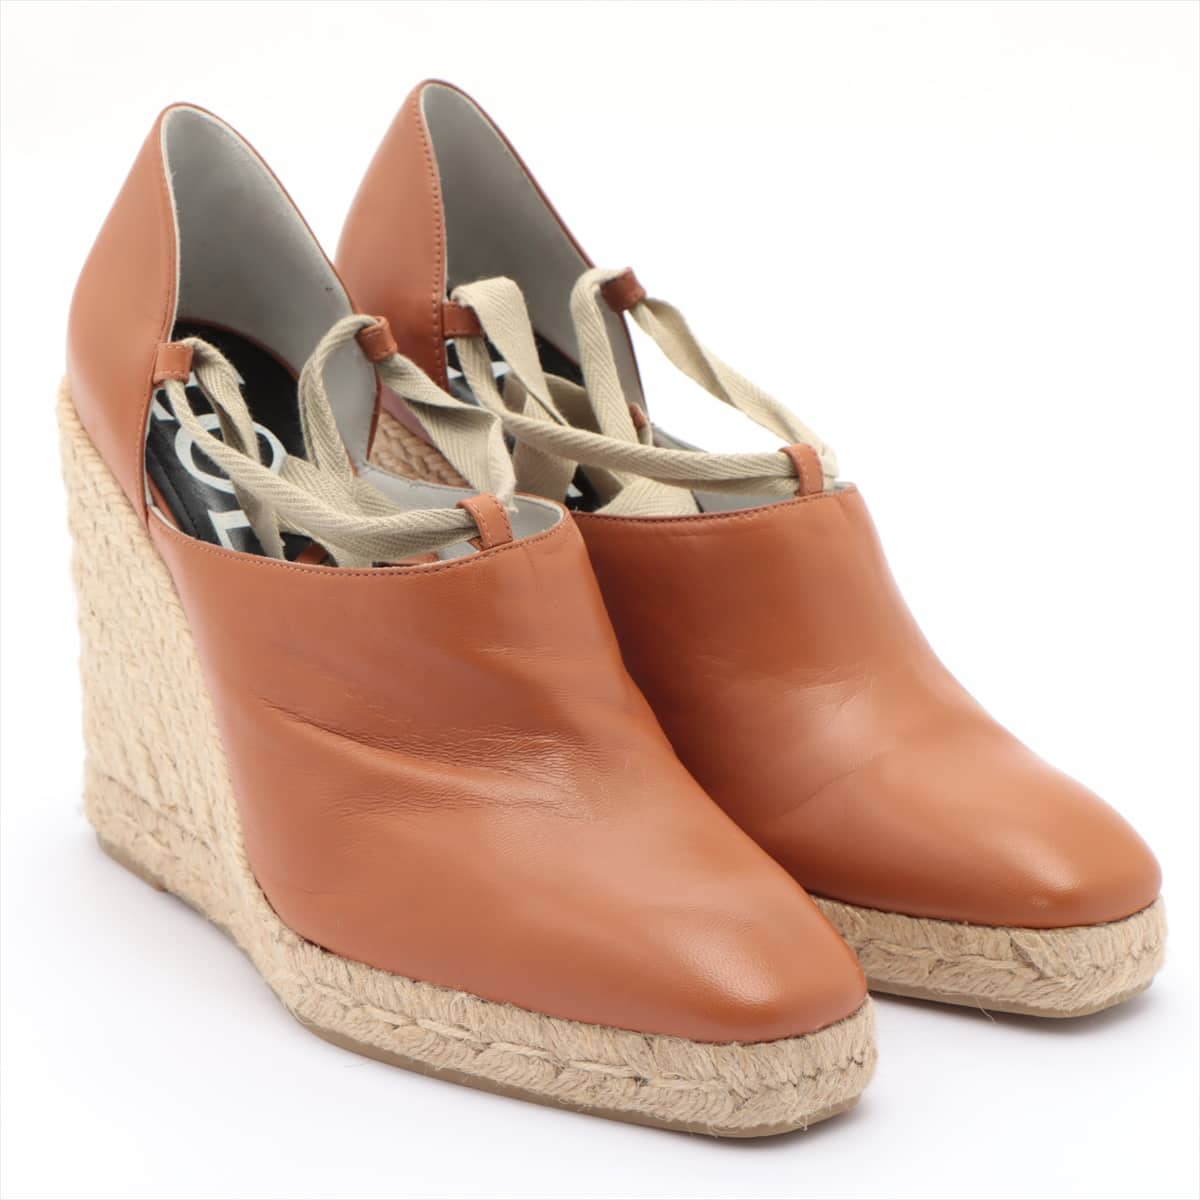 Loewe Leather Wedge Sole Sandals 38 Ladies' Brown